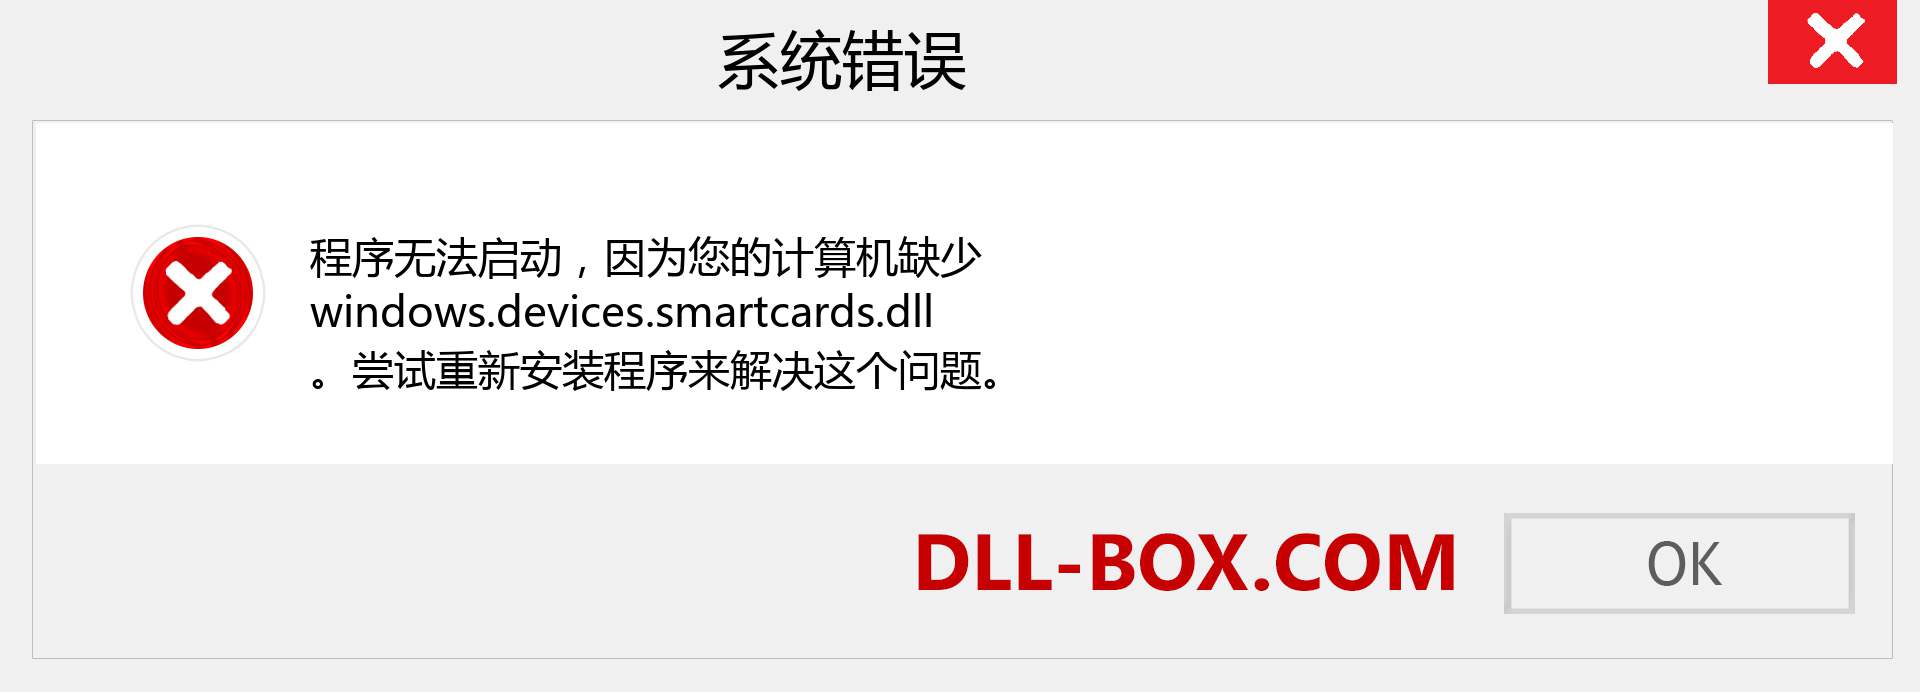 windows.devices.smartcards.dll 文件丢失？。 适用于 Windows 7、8、10 的下载 - 修复 Windows、照片、图像上的 windows.devices.smartcards dll 丢失错误